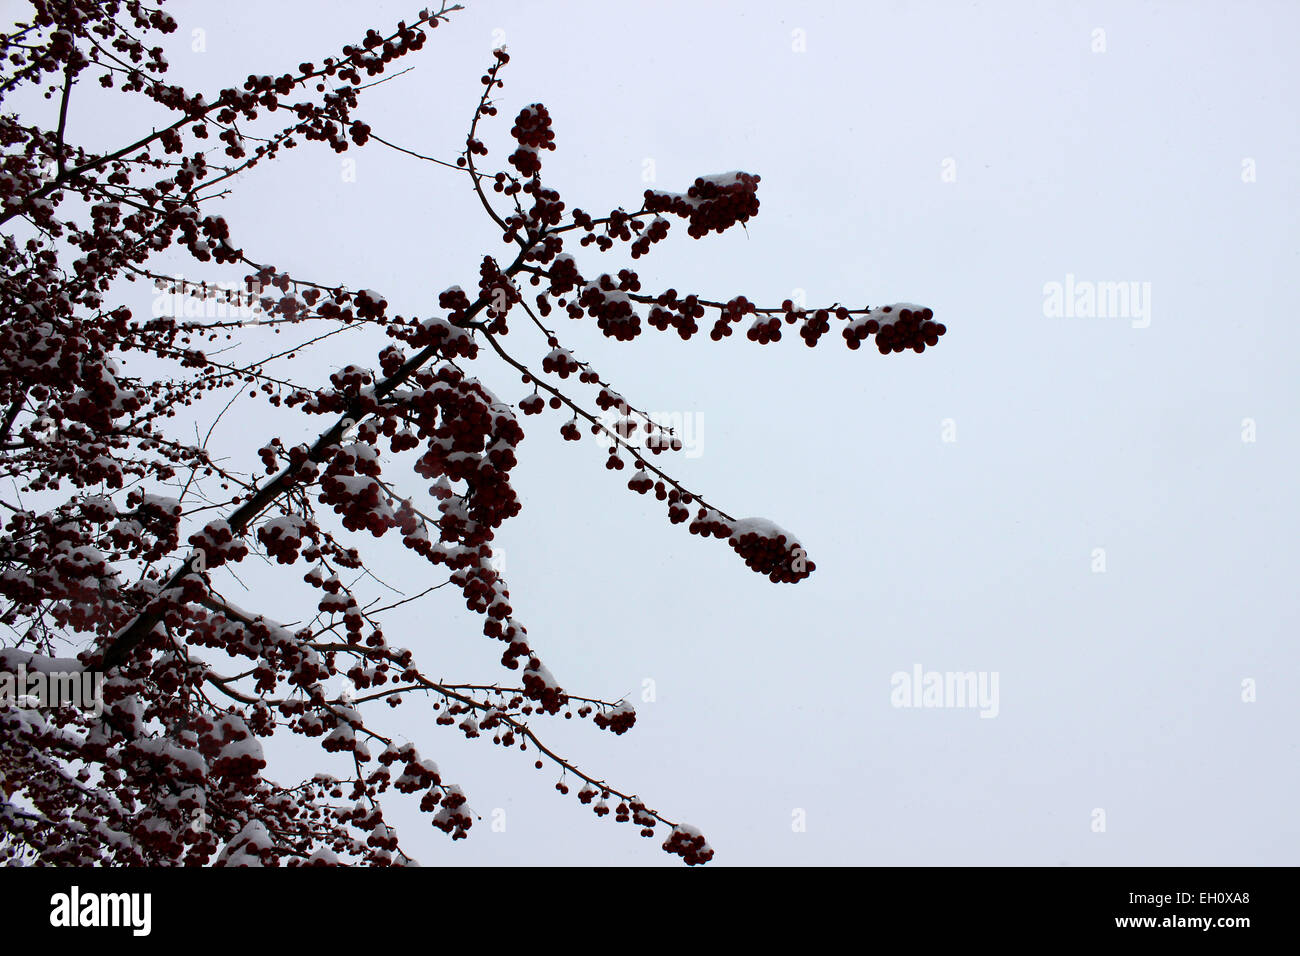 Nahaufnahme von einem mehrjährigen Ast mit roten Früchten, die stolz zwischen Schnee und bewölktem Himmel in einem kanadischen Winter Kontraste Stockfoto